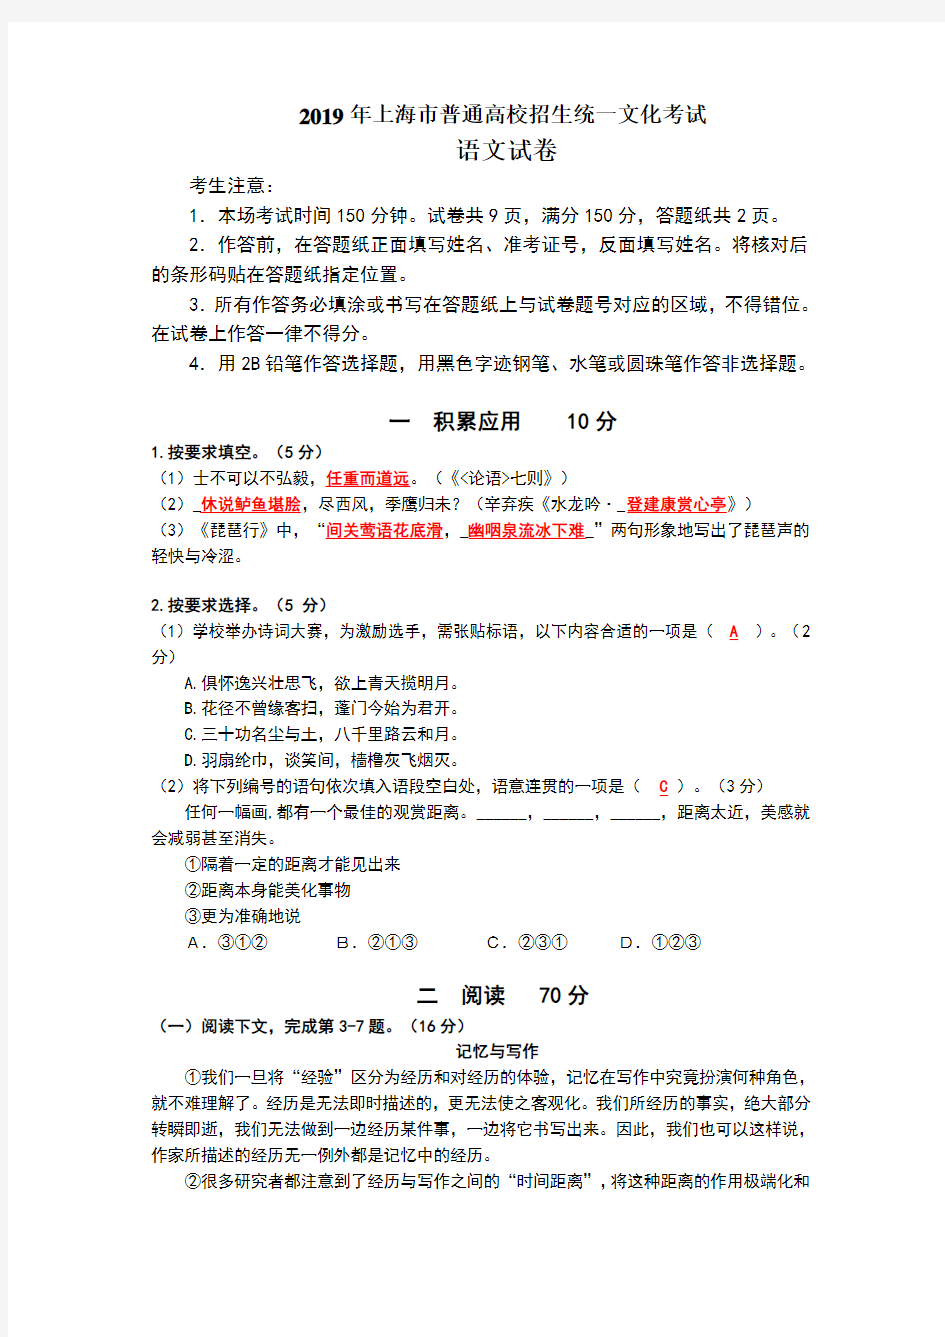 2019上海语文高考卷、答案详解